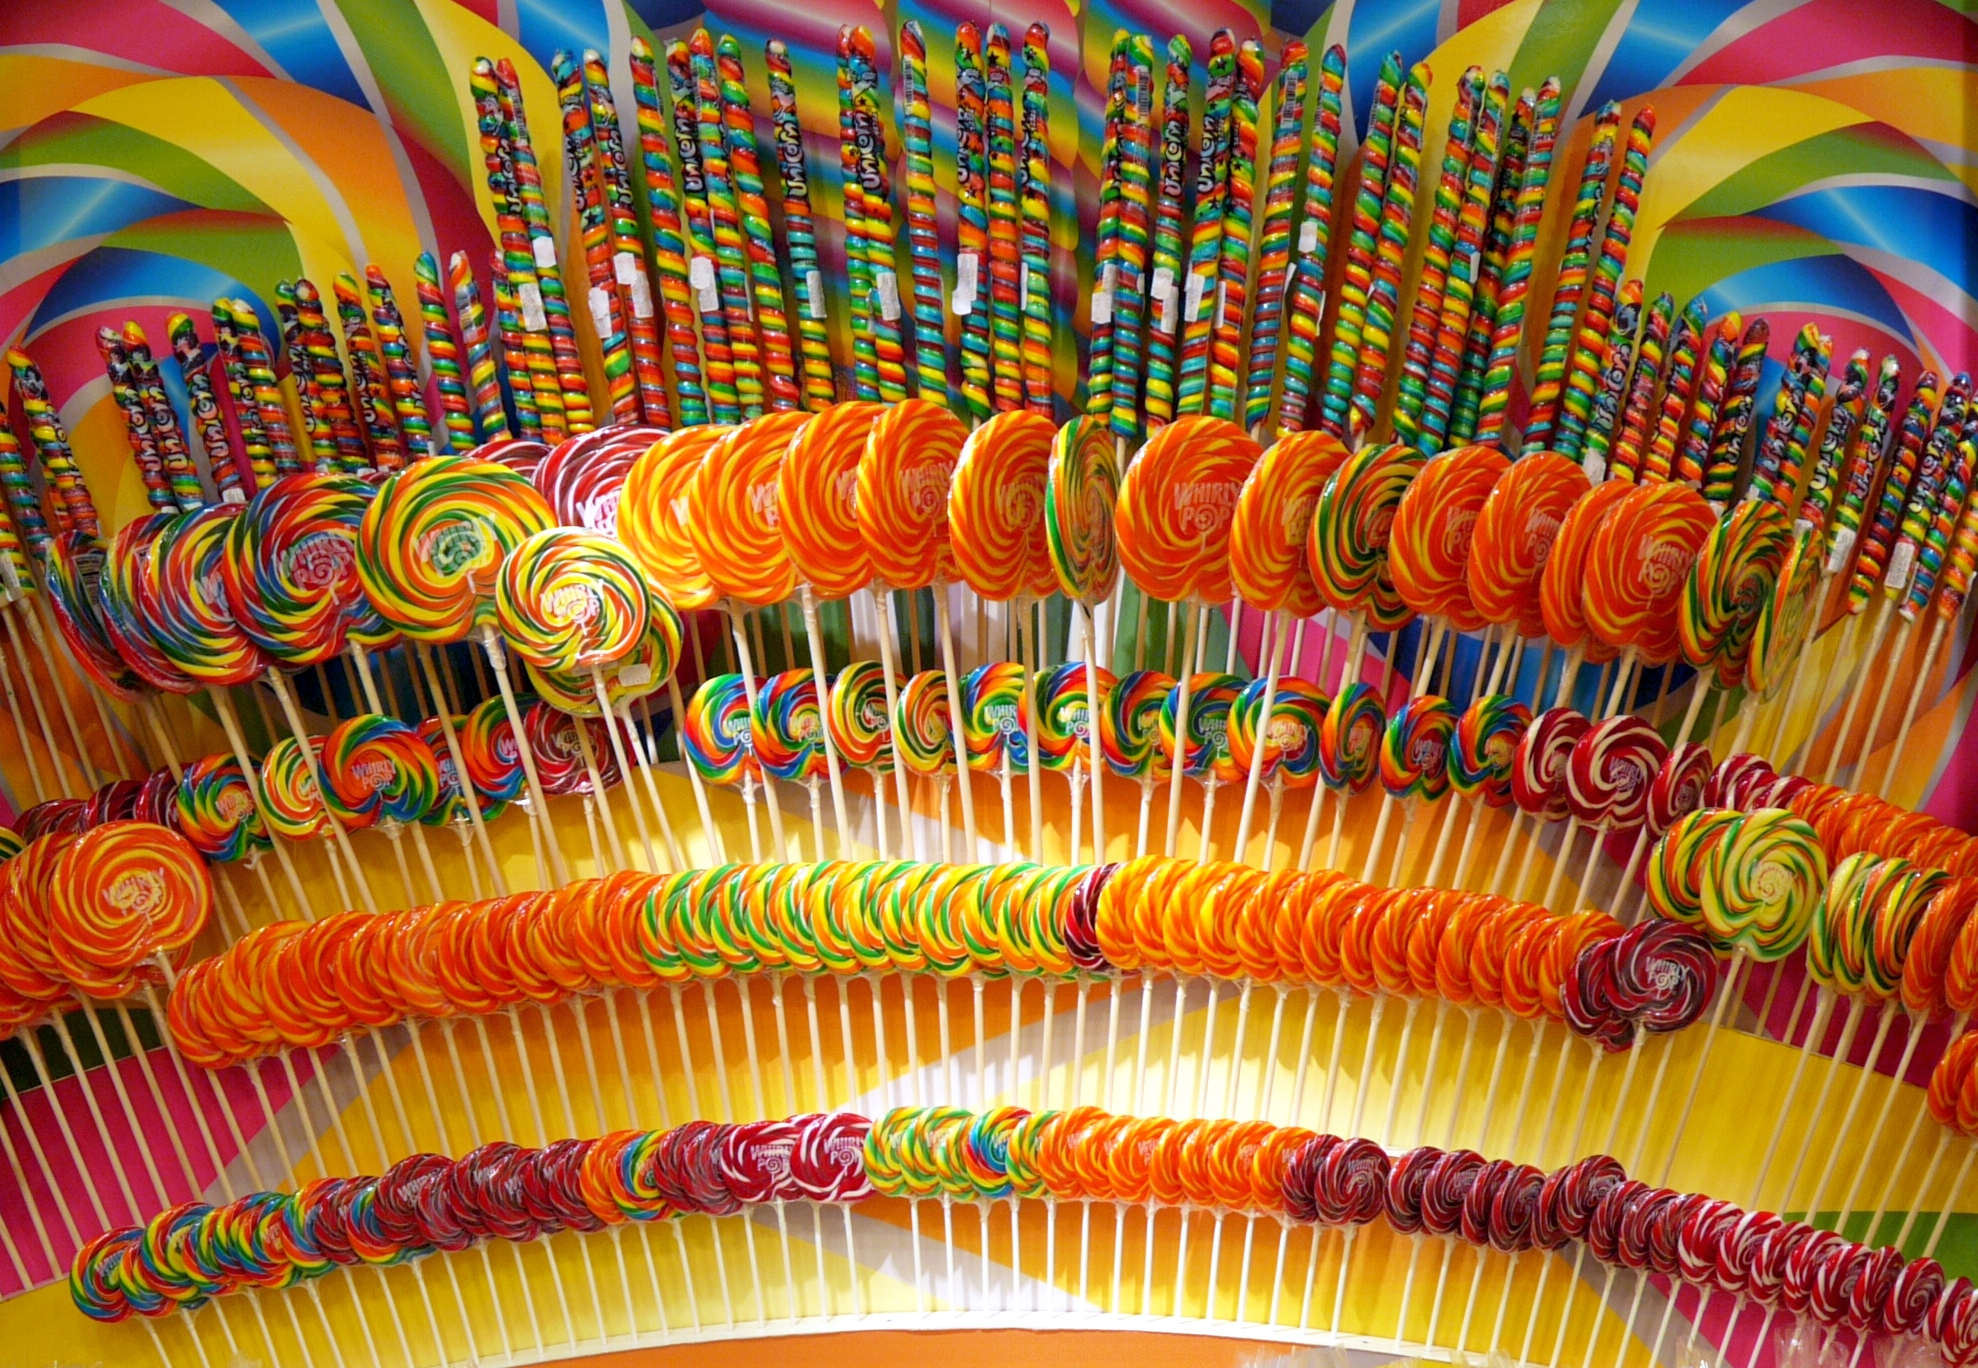 Lollipop lollipop, ohhh la lollipop | Flickr - Photo Sharing!